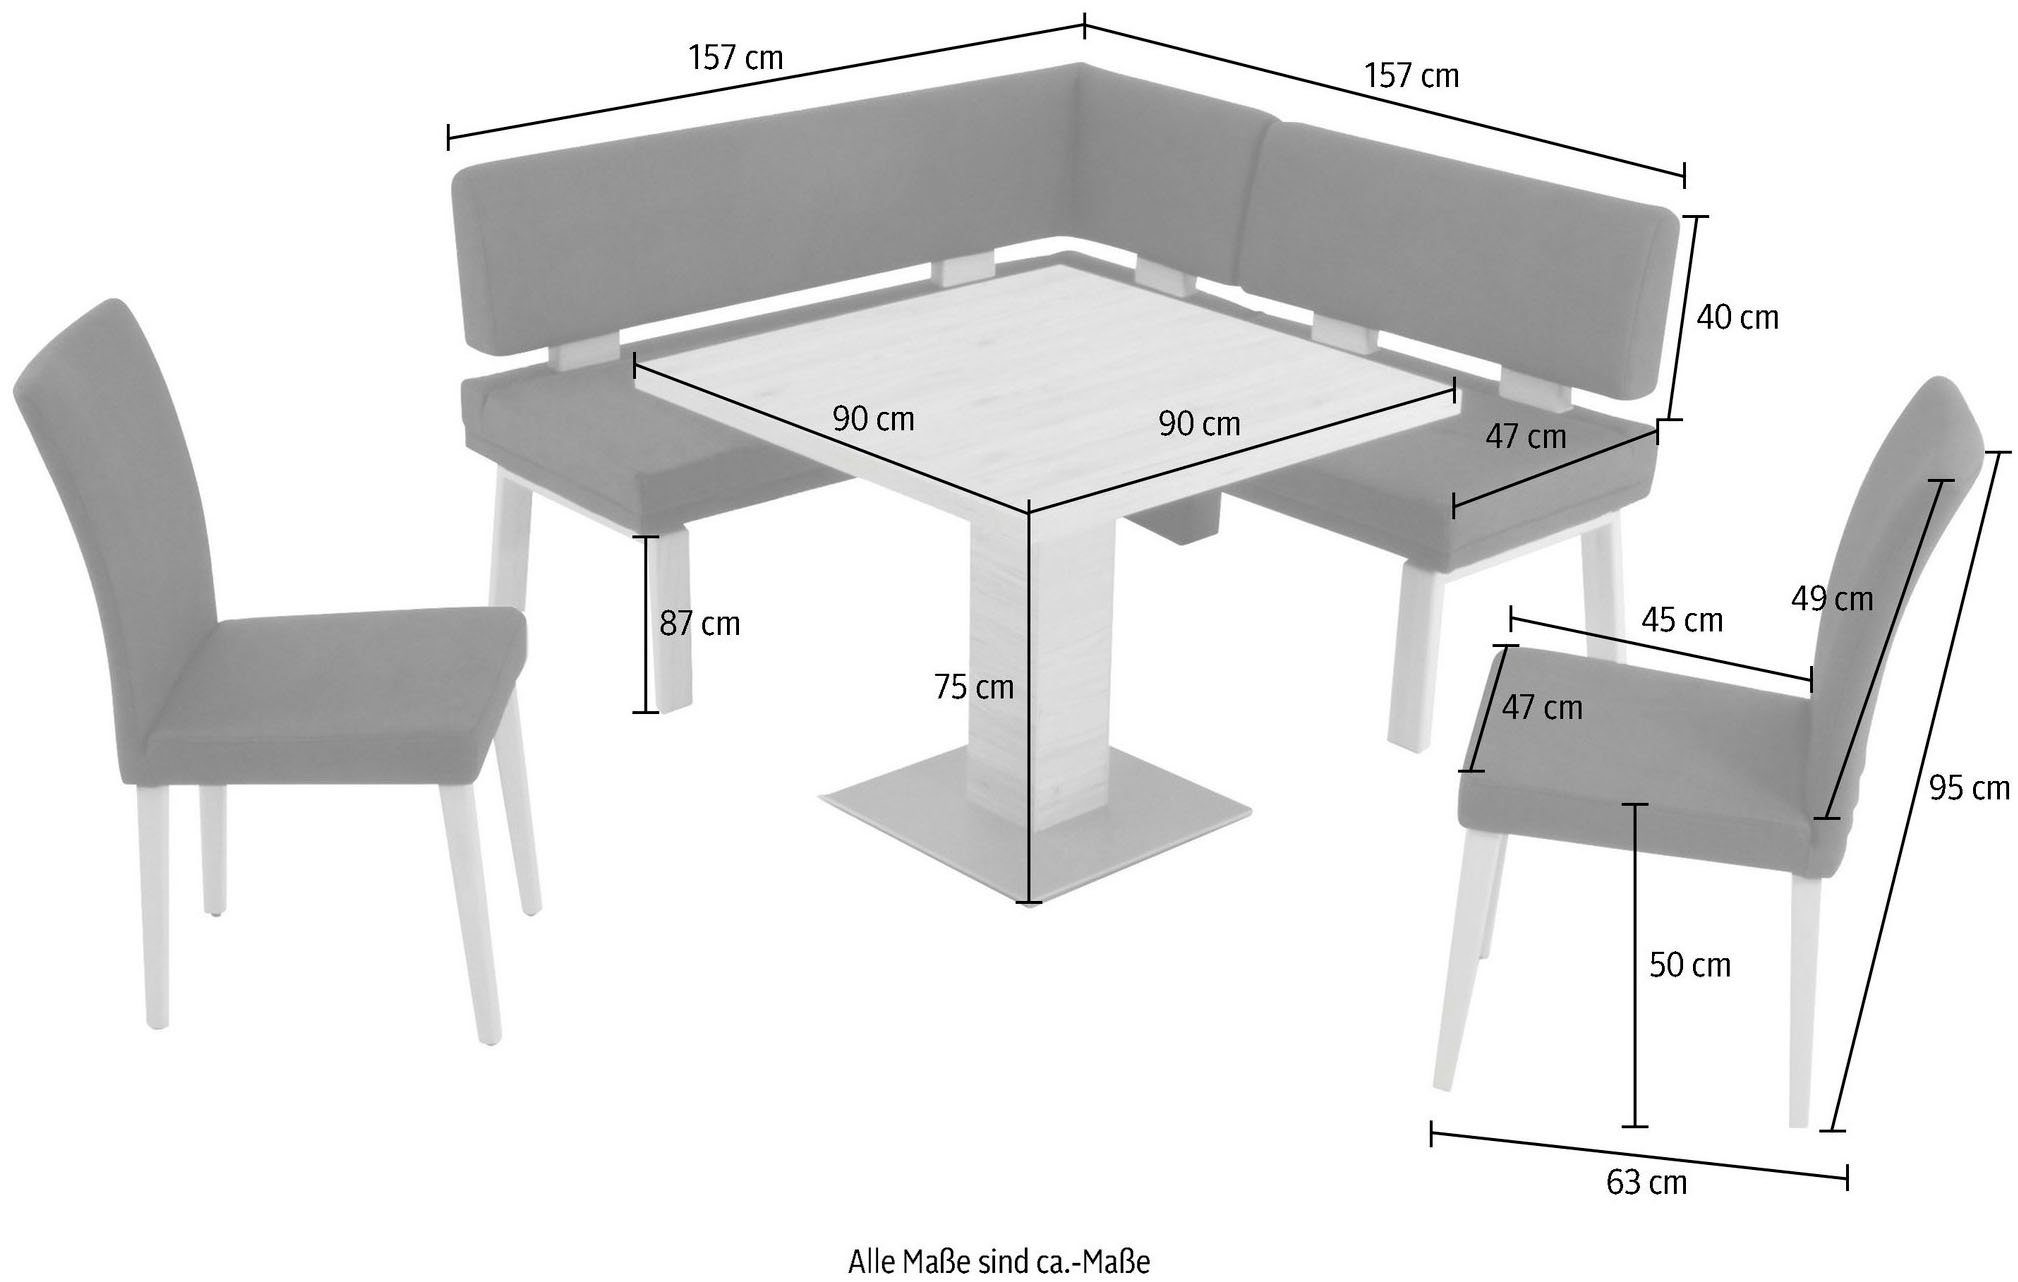 K+W Komfort & Wohnen Eckbankgruppe gleichschenklig 90x90cm, Eiche 4-Fußholzstühle Santos black und zwei Tisch I, 157cm